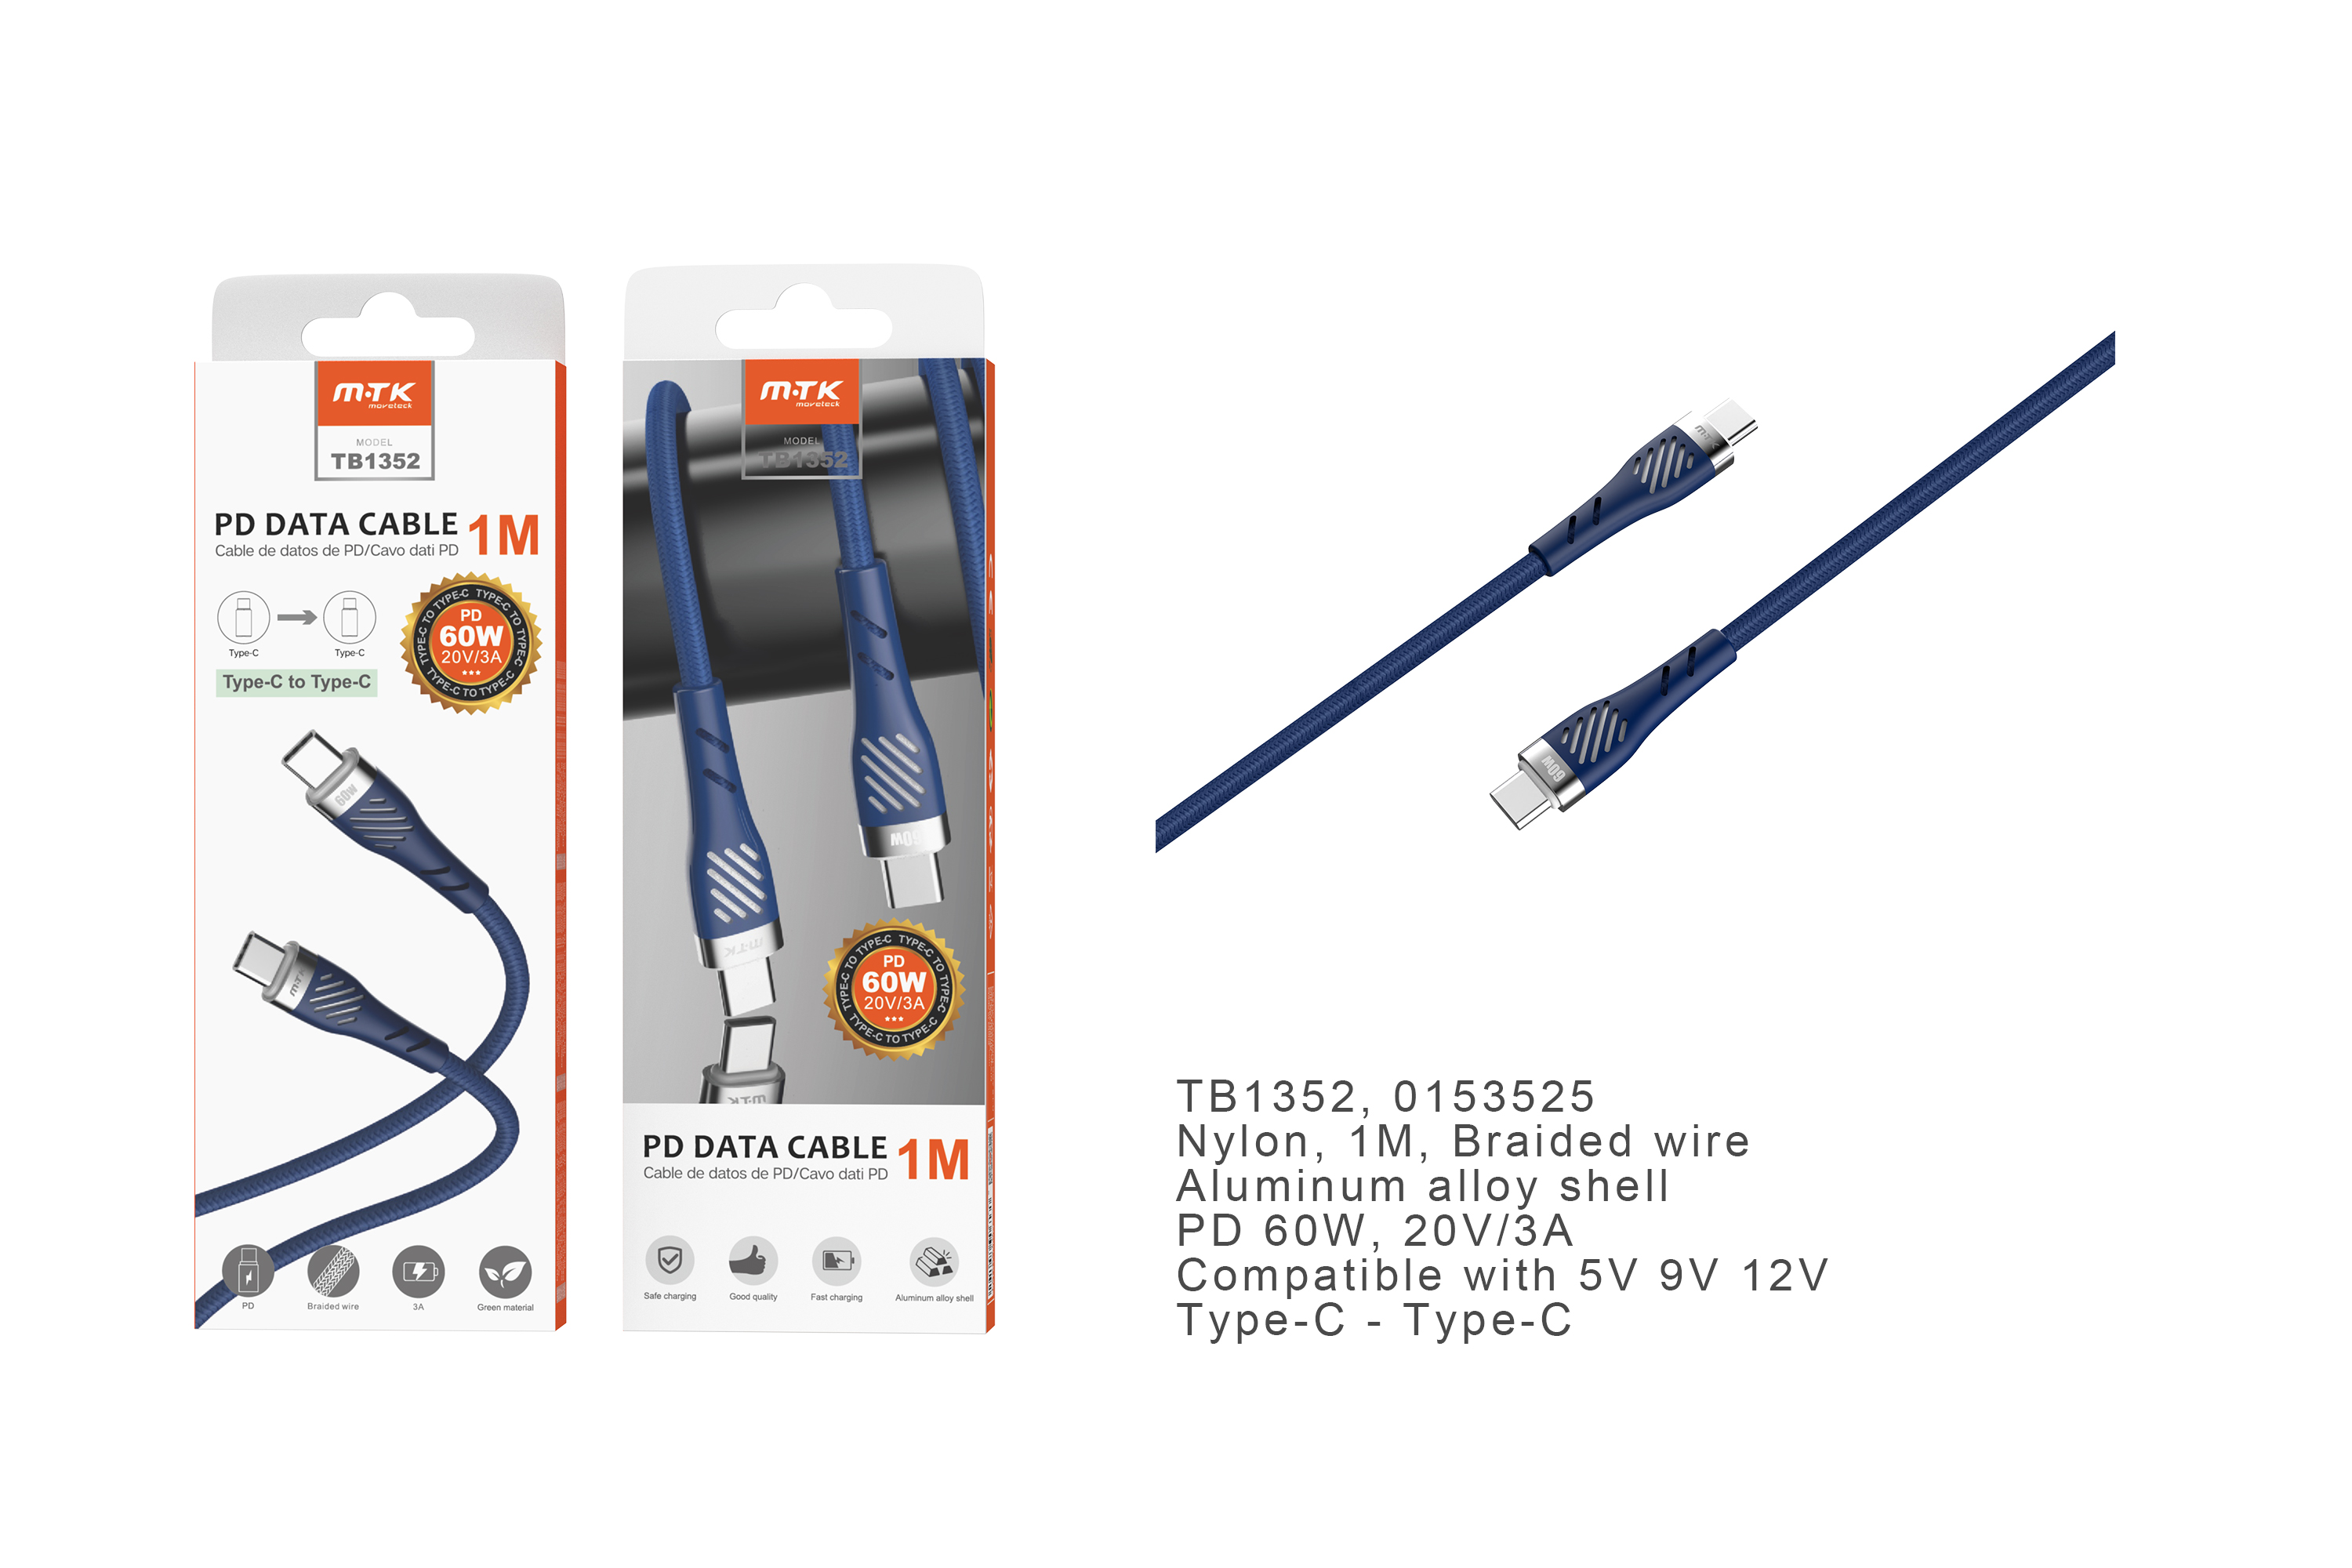 TB1352  AZ Cable de Datos Camyl nylon trenzado , Type-C a Type-C ,Carga Rapida PD 60W/20V/3A , Cable